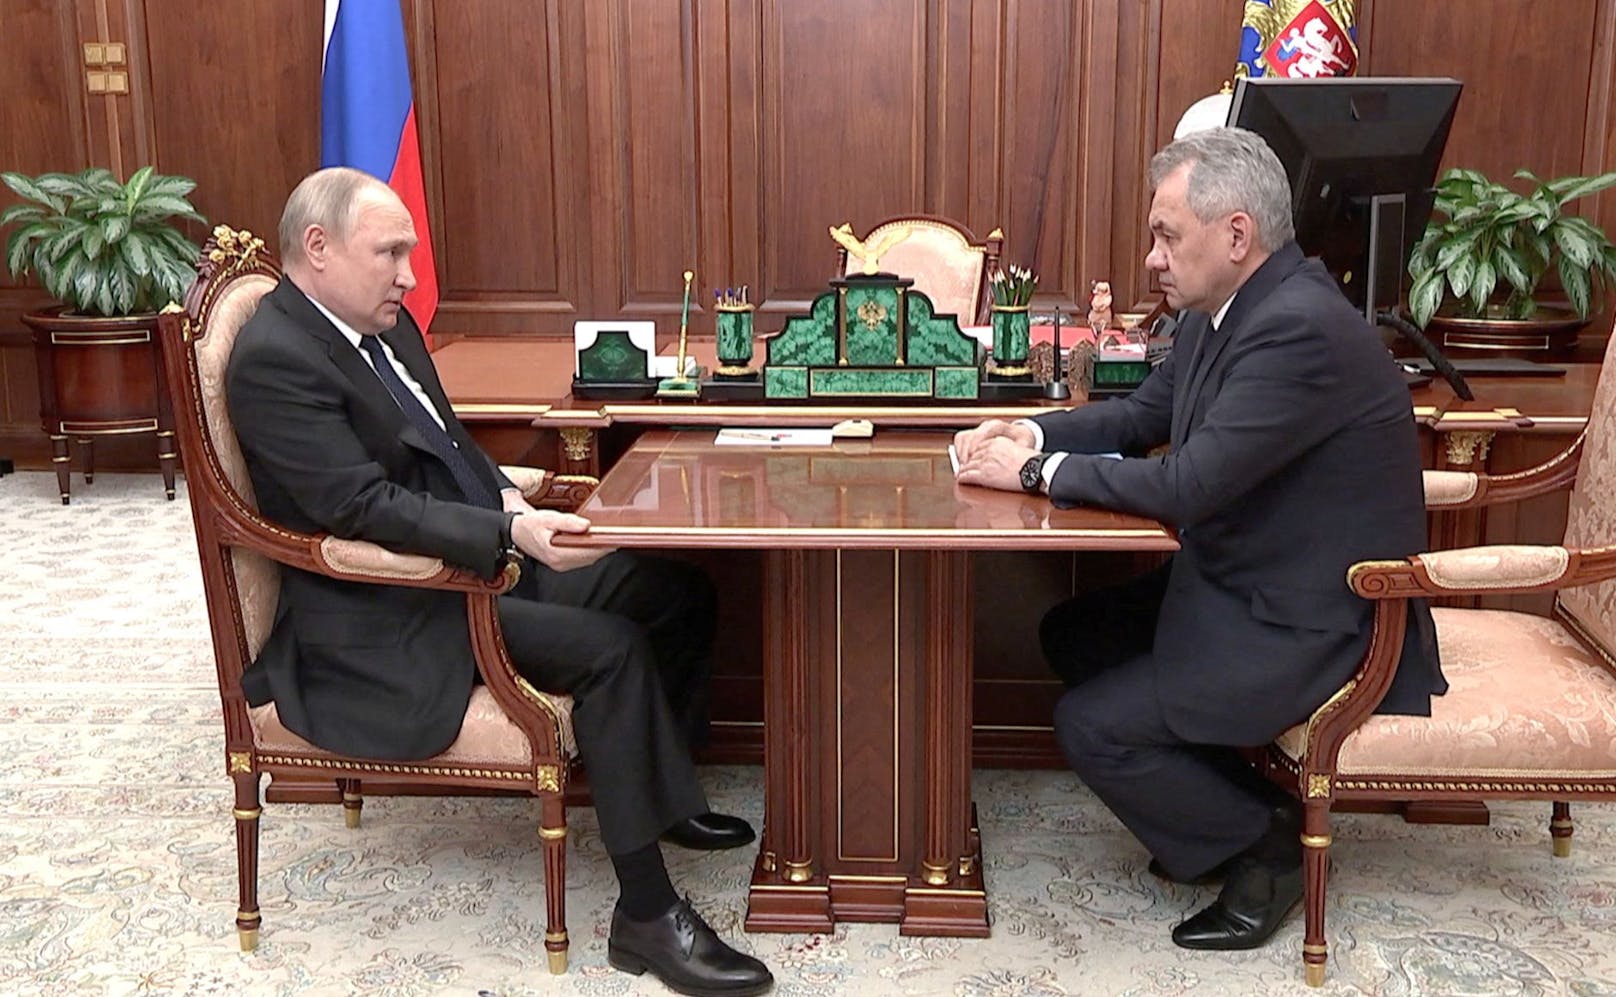 Wladimir Putin mit Verteidigungsminister Sergei Schoigu. Putins seltsame Handhaltung sorgt für Spekulationen über seine Gesundheit.